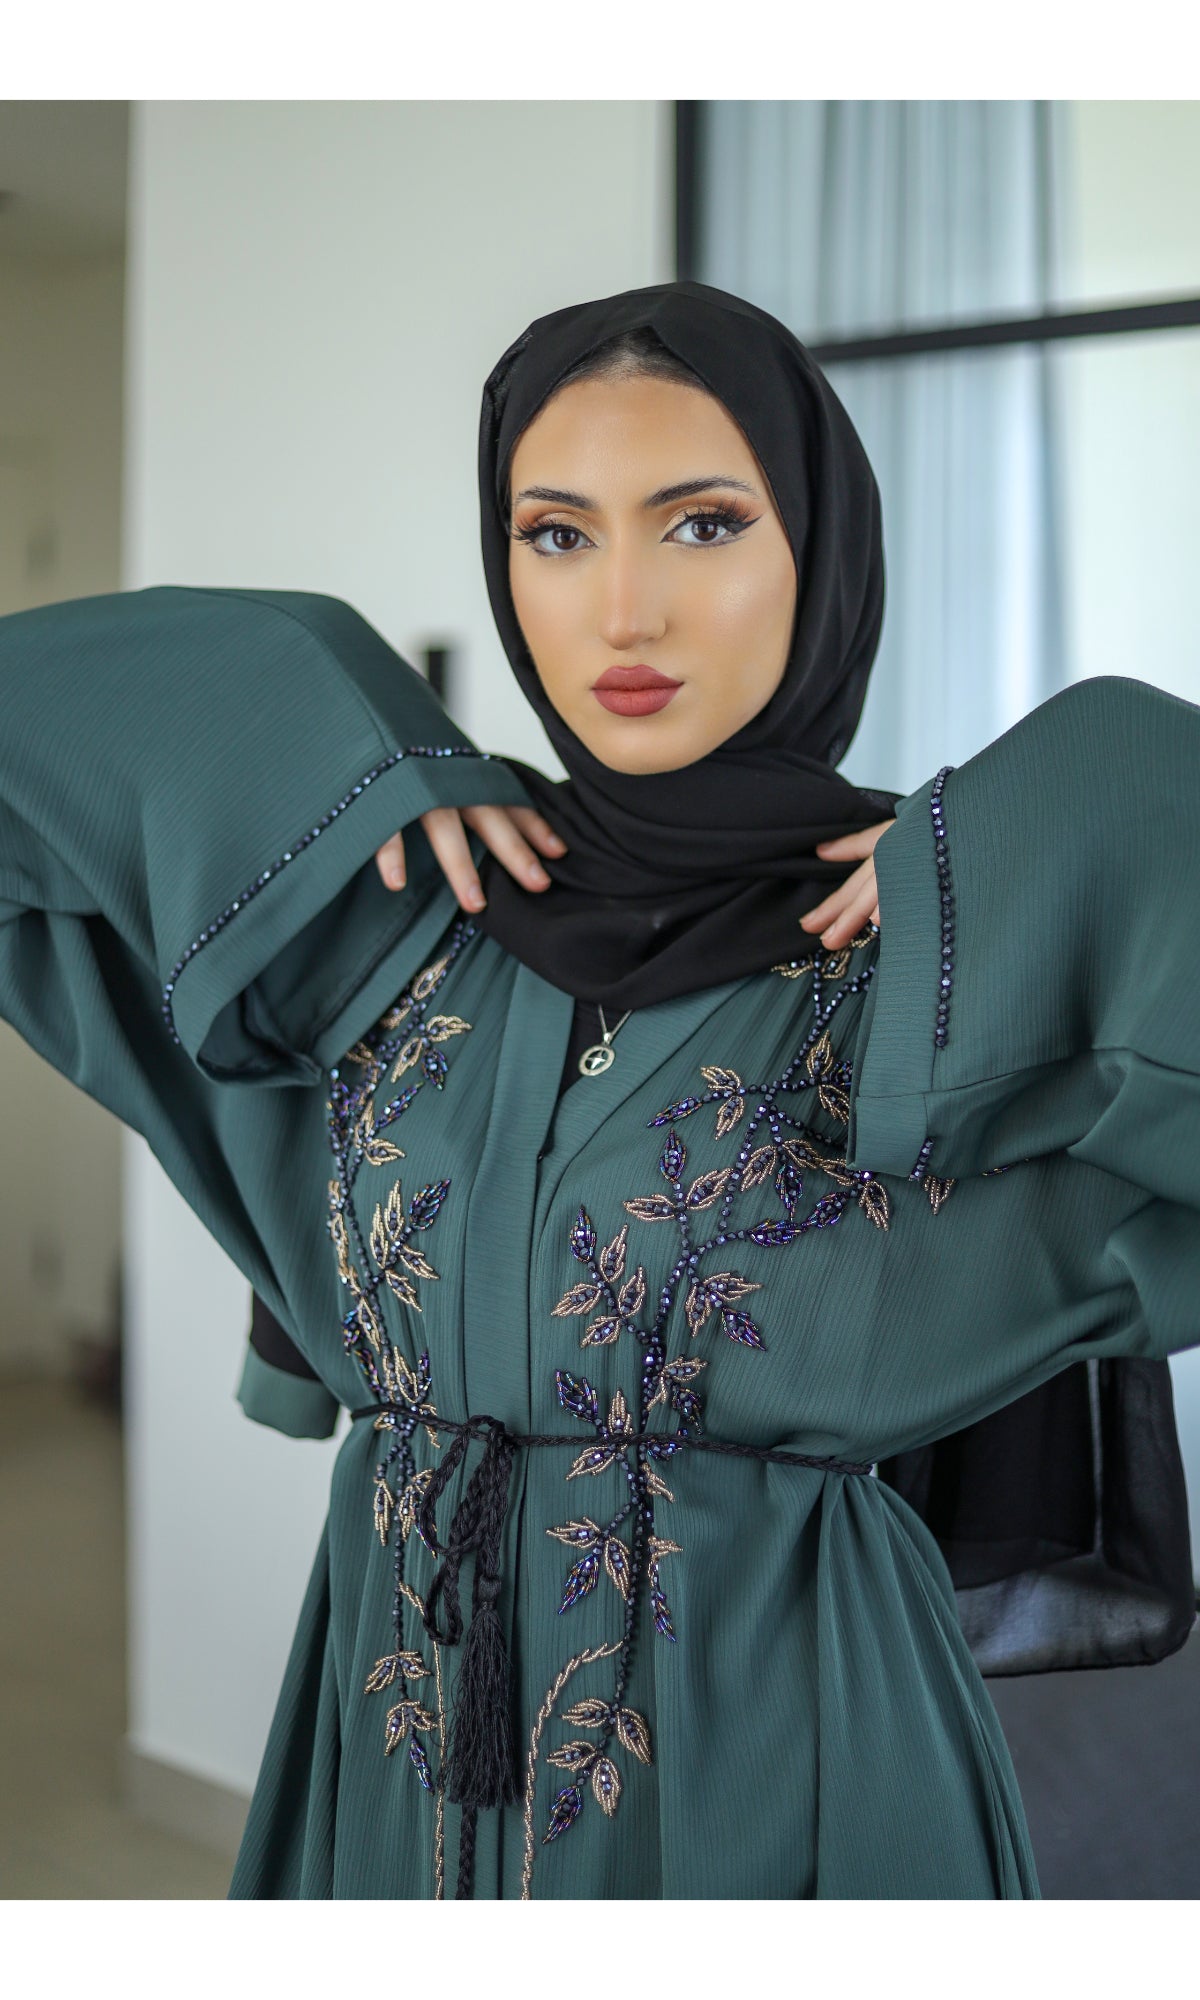 Sheikha Embellished Abaya Turquoise